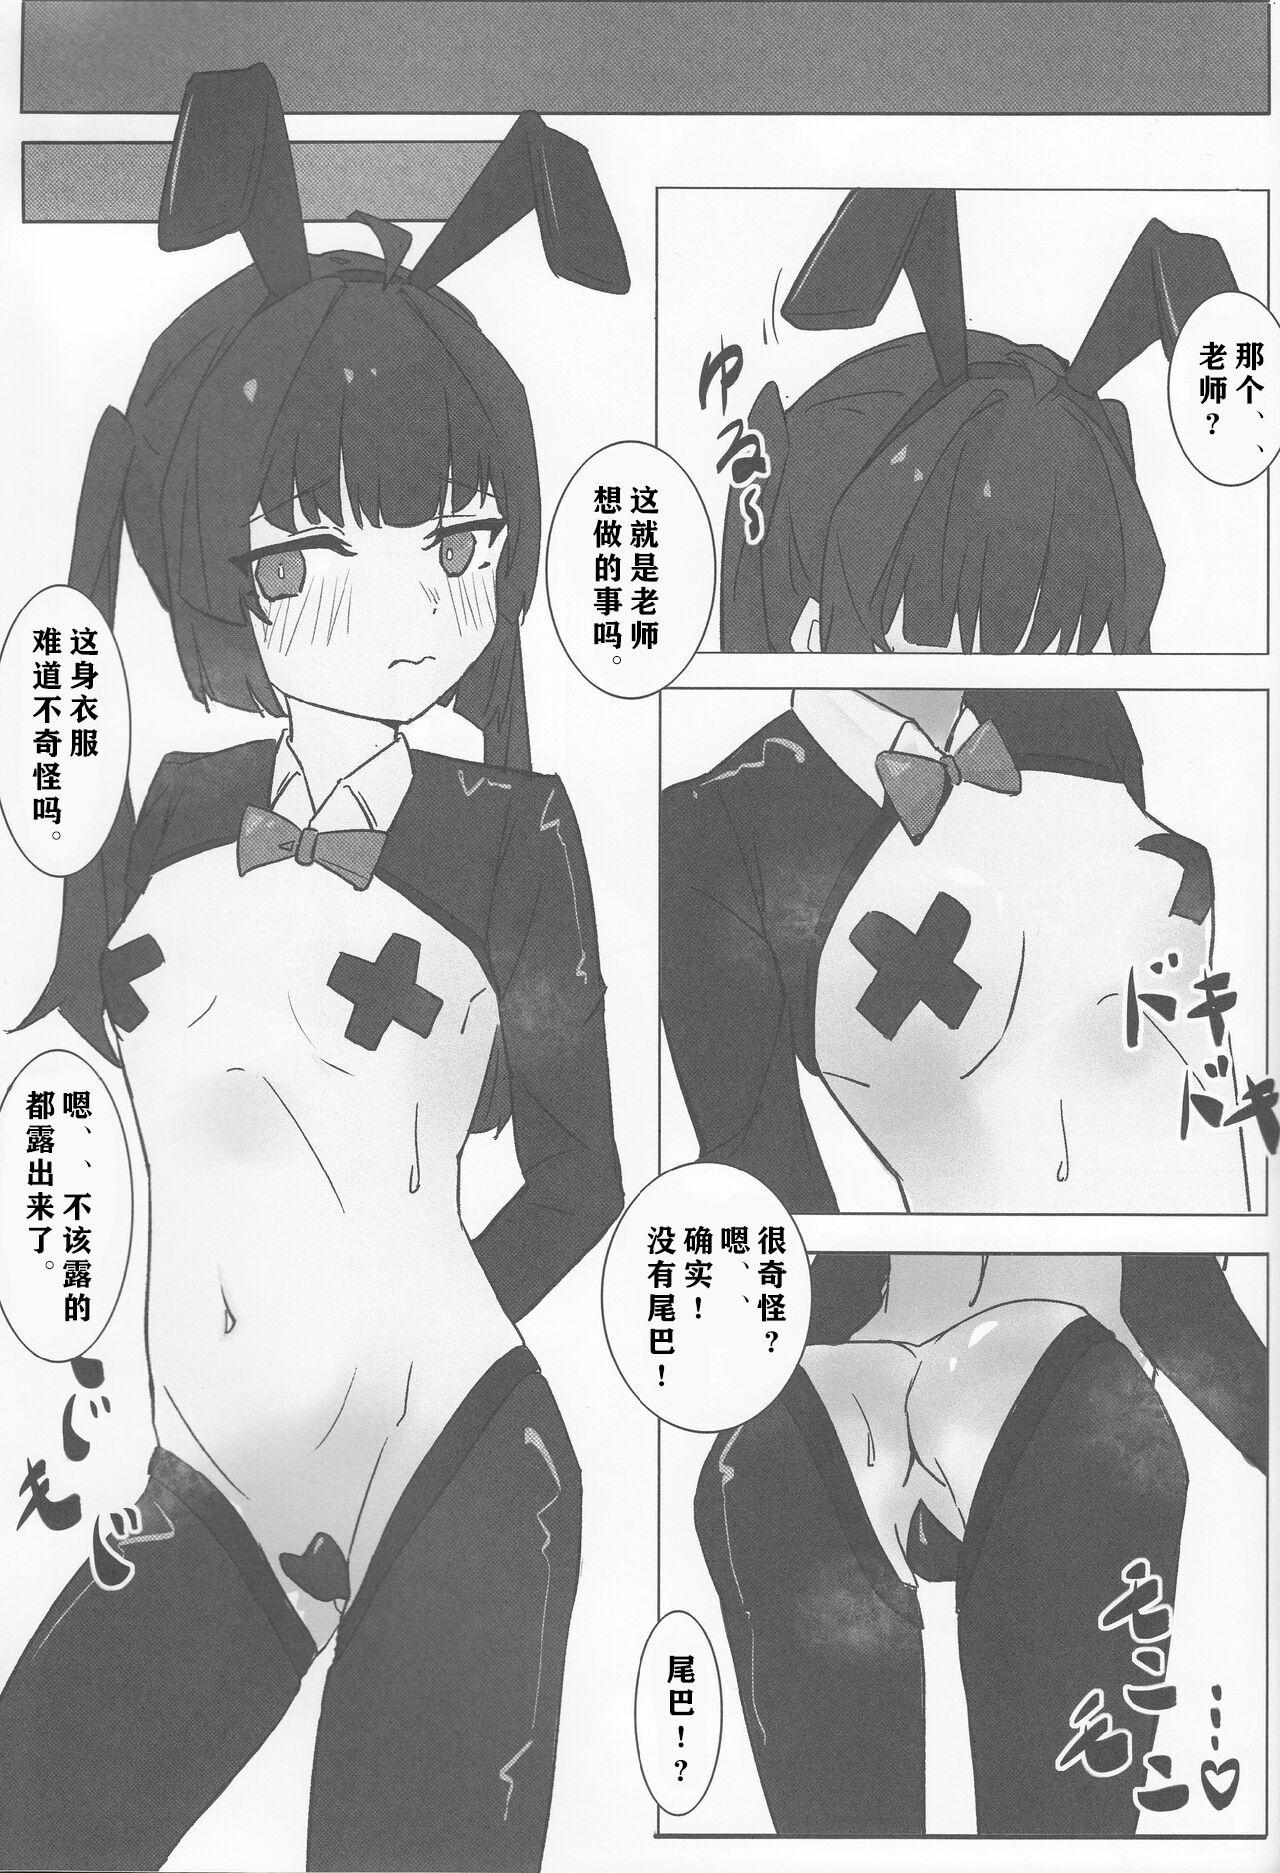 Horny Sluts Miyu no Tokusei Kosu |美游的定制cos - Blue archive Culo - Page 8